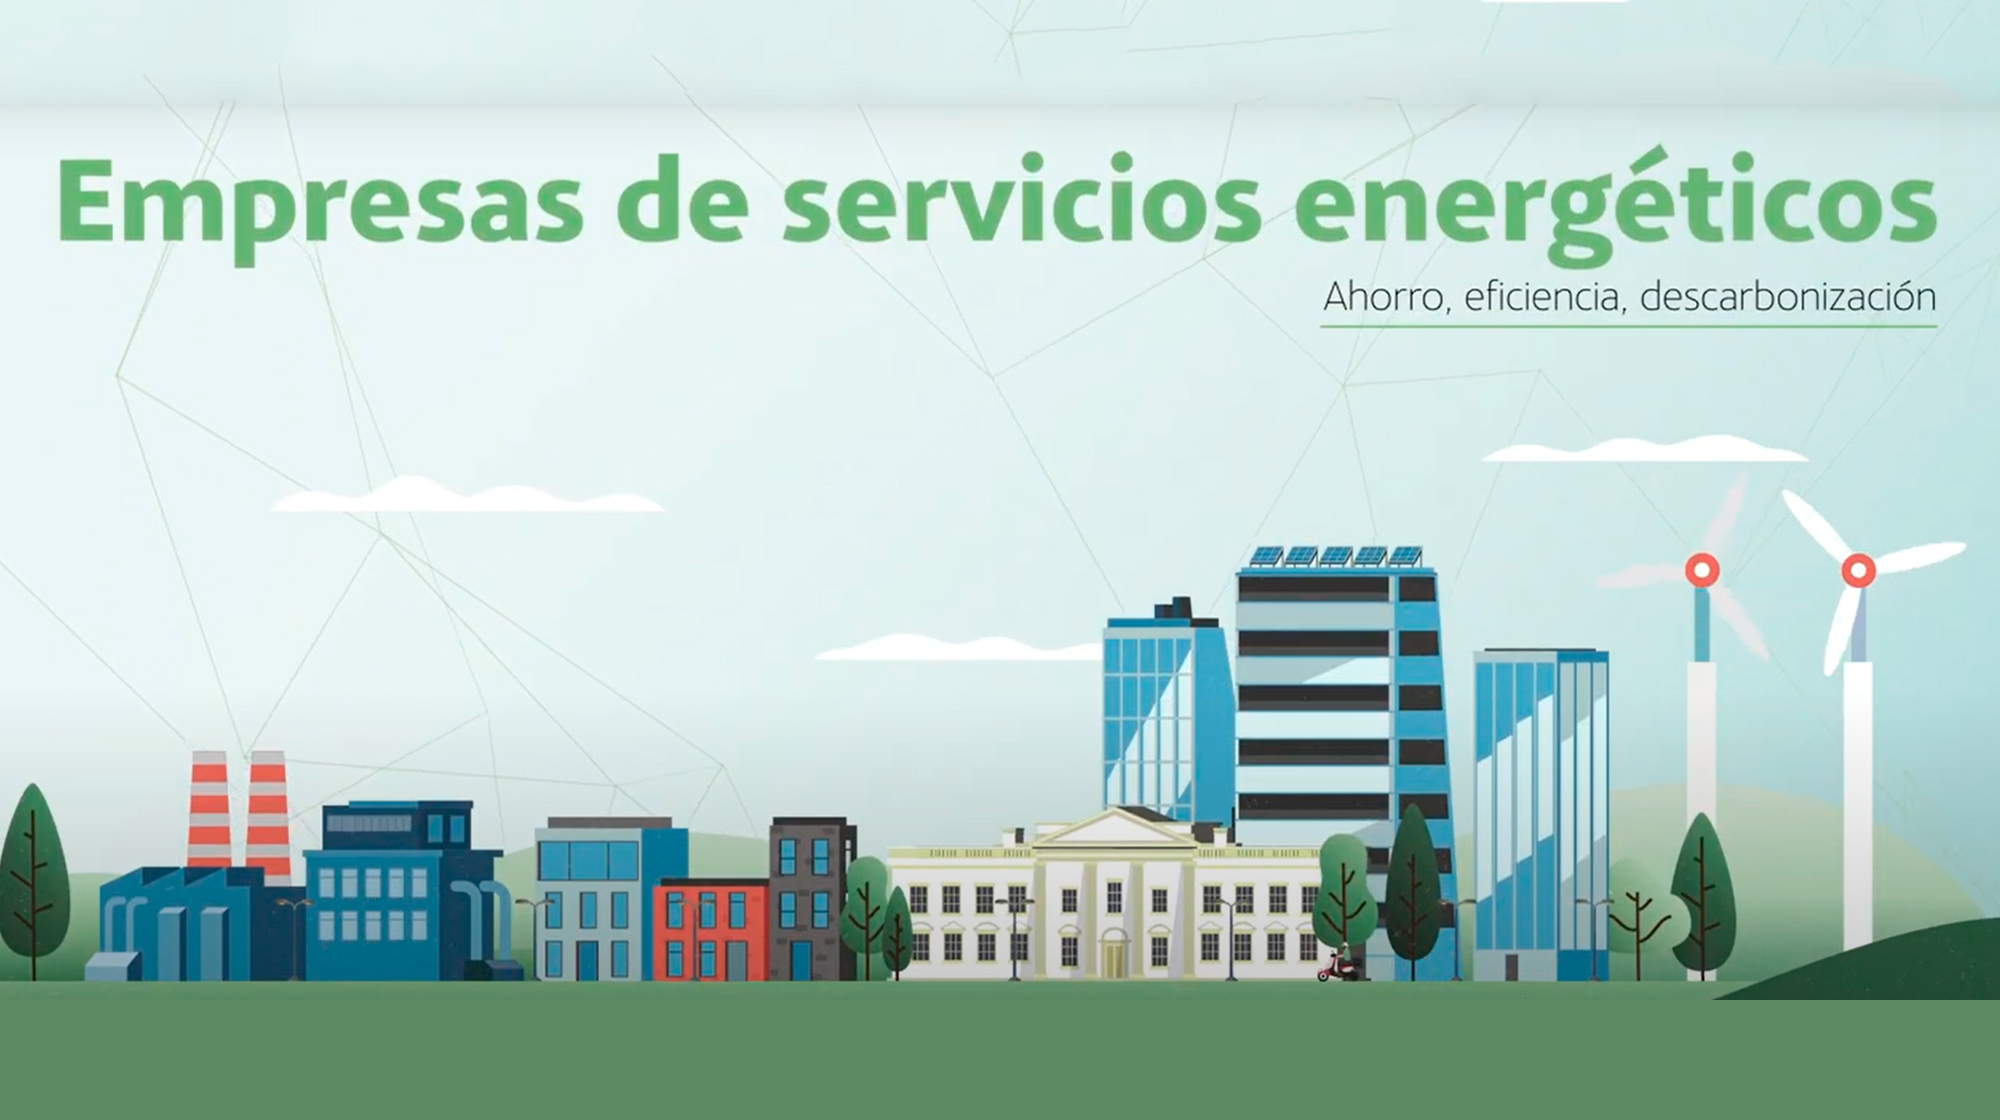 Qué son las empresas de servicios energéticos